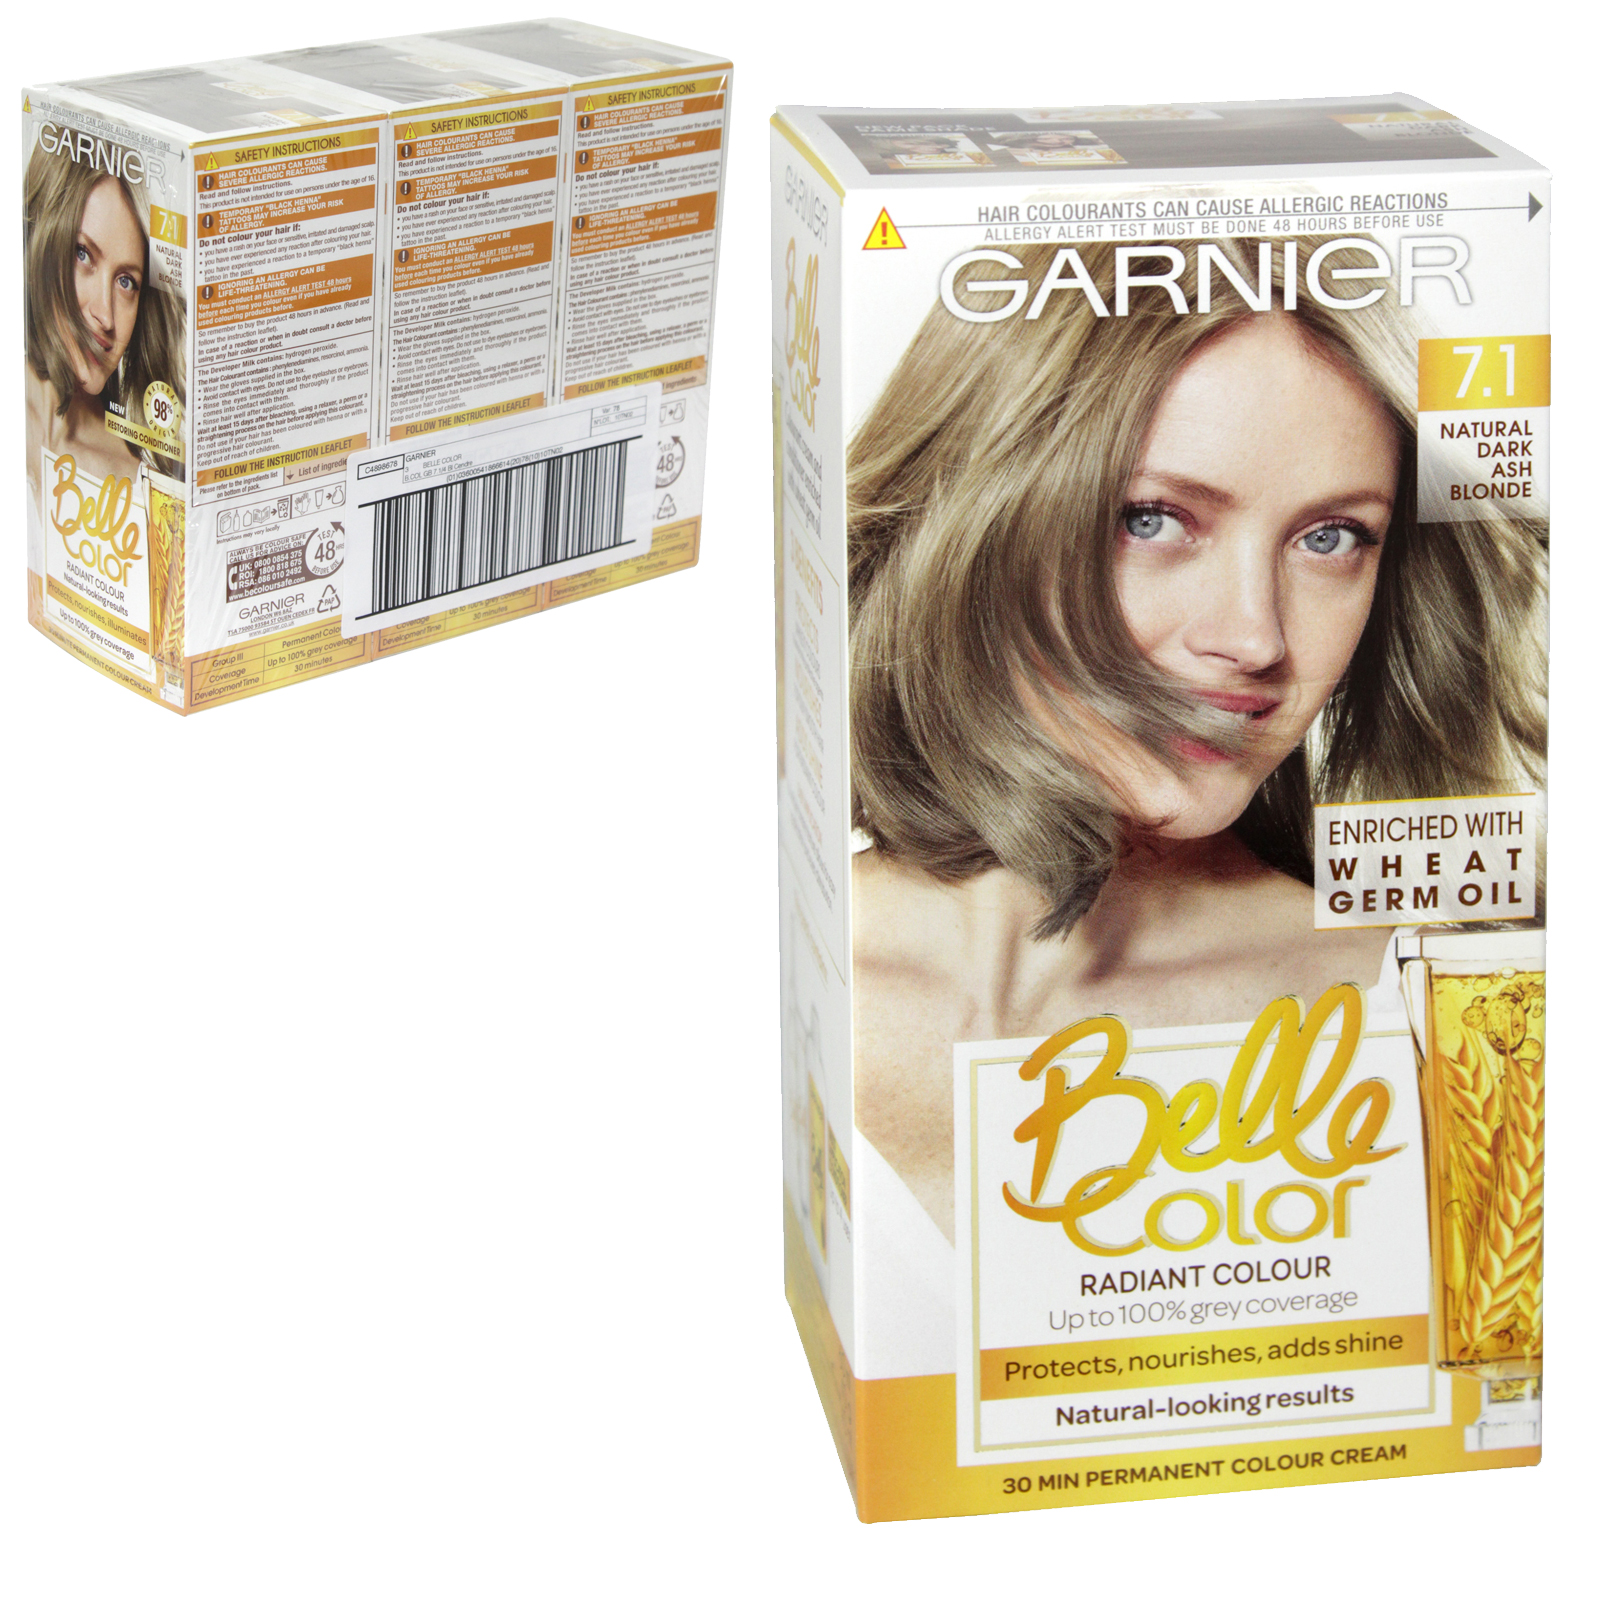 Garnier Belle Color 7 1 Natural Dark Ash Blonde Permanent